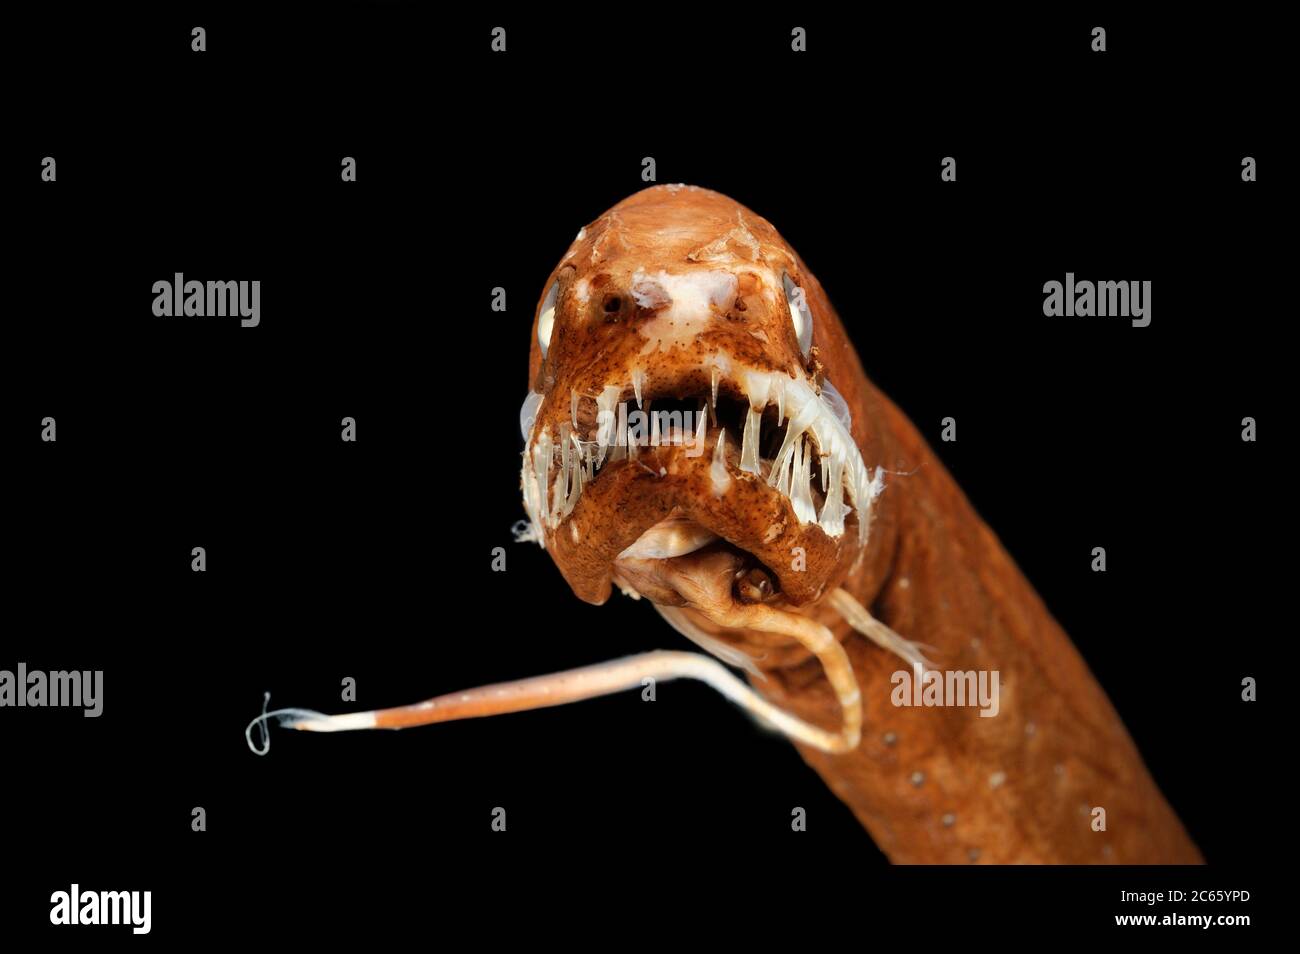 El pez de mar negro sin escamas (Melanostomias melanops) es un pez de mar delgado de hasta 30 cm de largo. Presenta un proceso de bioluminiscencia carnosa en su barbilla, utilizado para atraer a las presas al alcance de la boca fuertemente dentada. Los órganos emisores de luz están dispuestos a lo largo de la parte inferior de su cuerpo y por debajo del ojo. Se puede encontrar en el Atlántico y el Océano Indo-Pacífico. Muestra conservada. La fotografía se tomó en colaboración con el Museo Zoológico de la Universidad de Hamburgo. Foto de stock